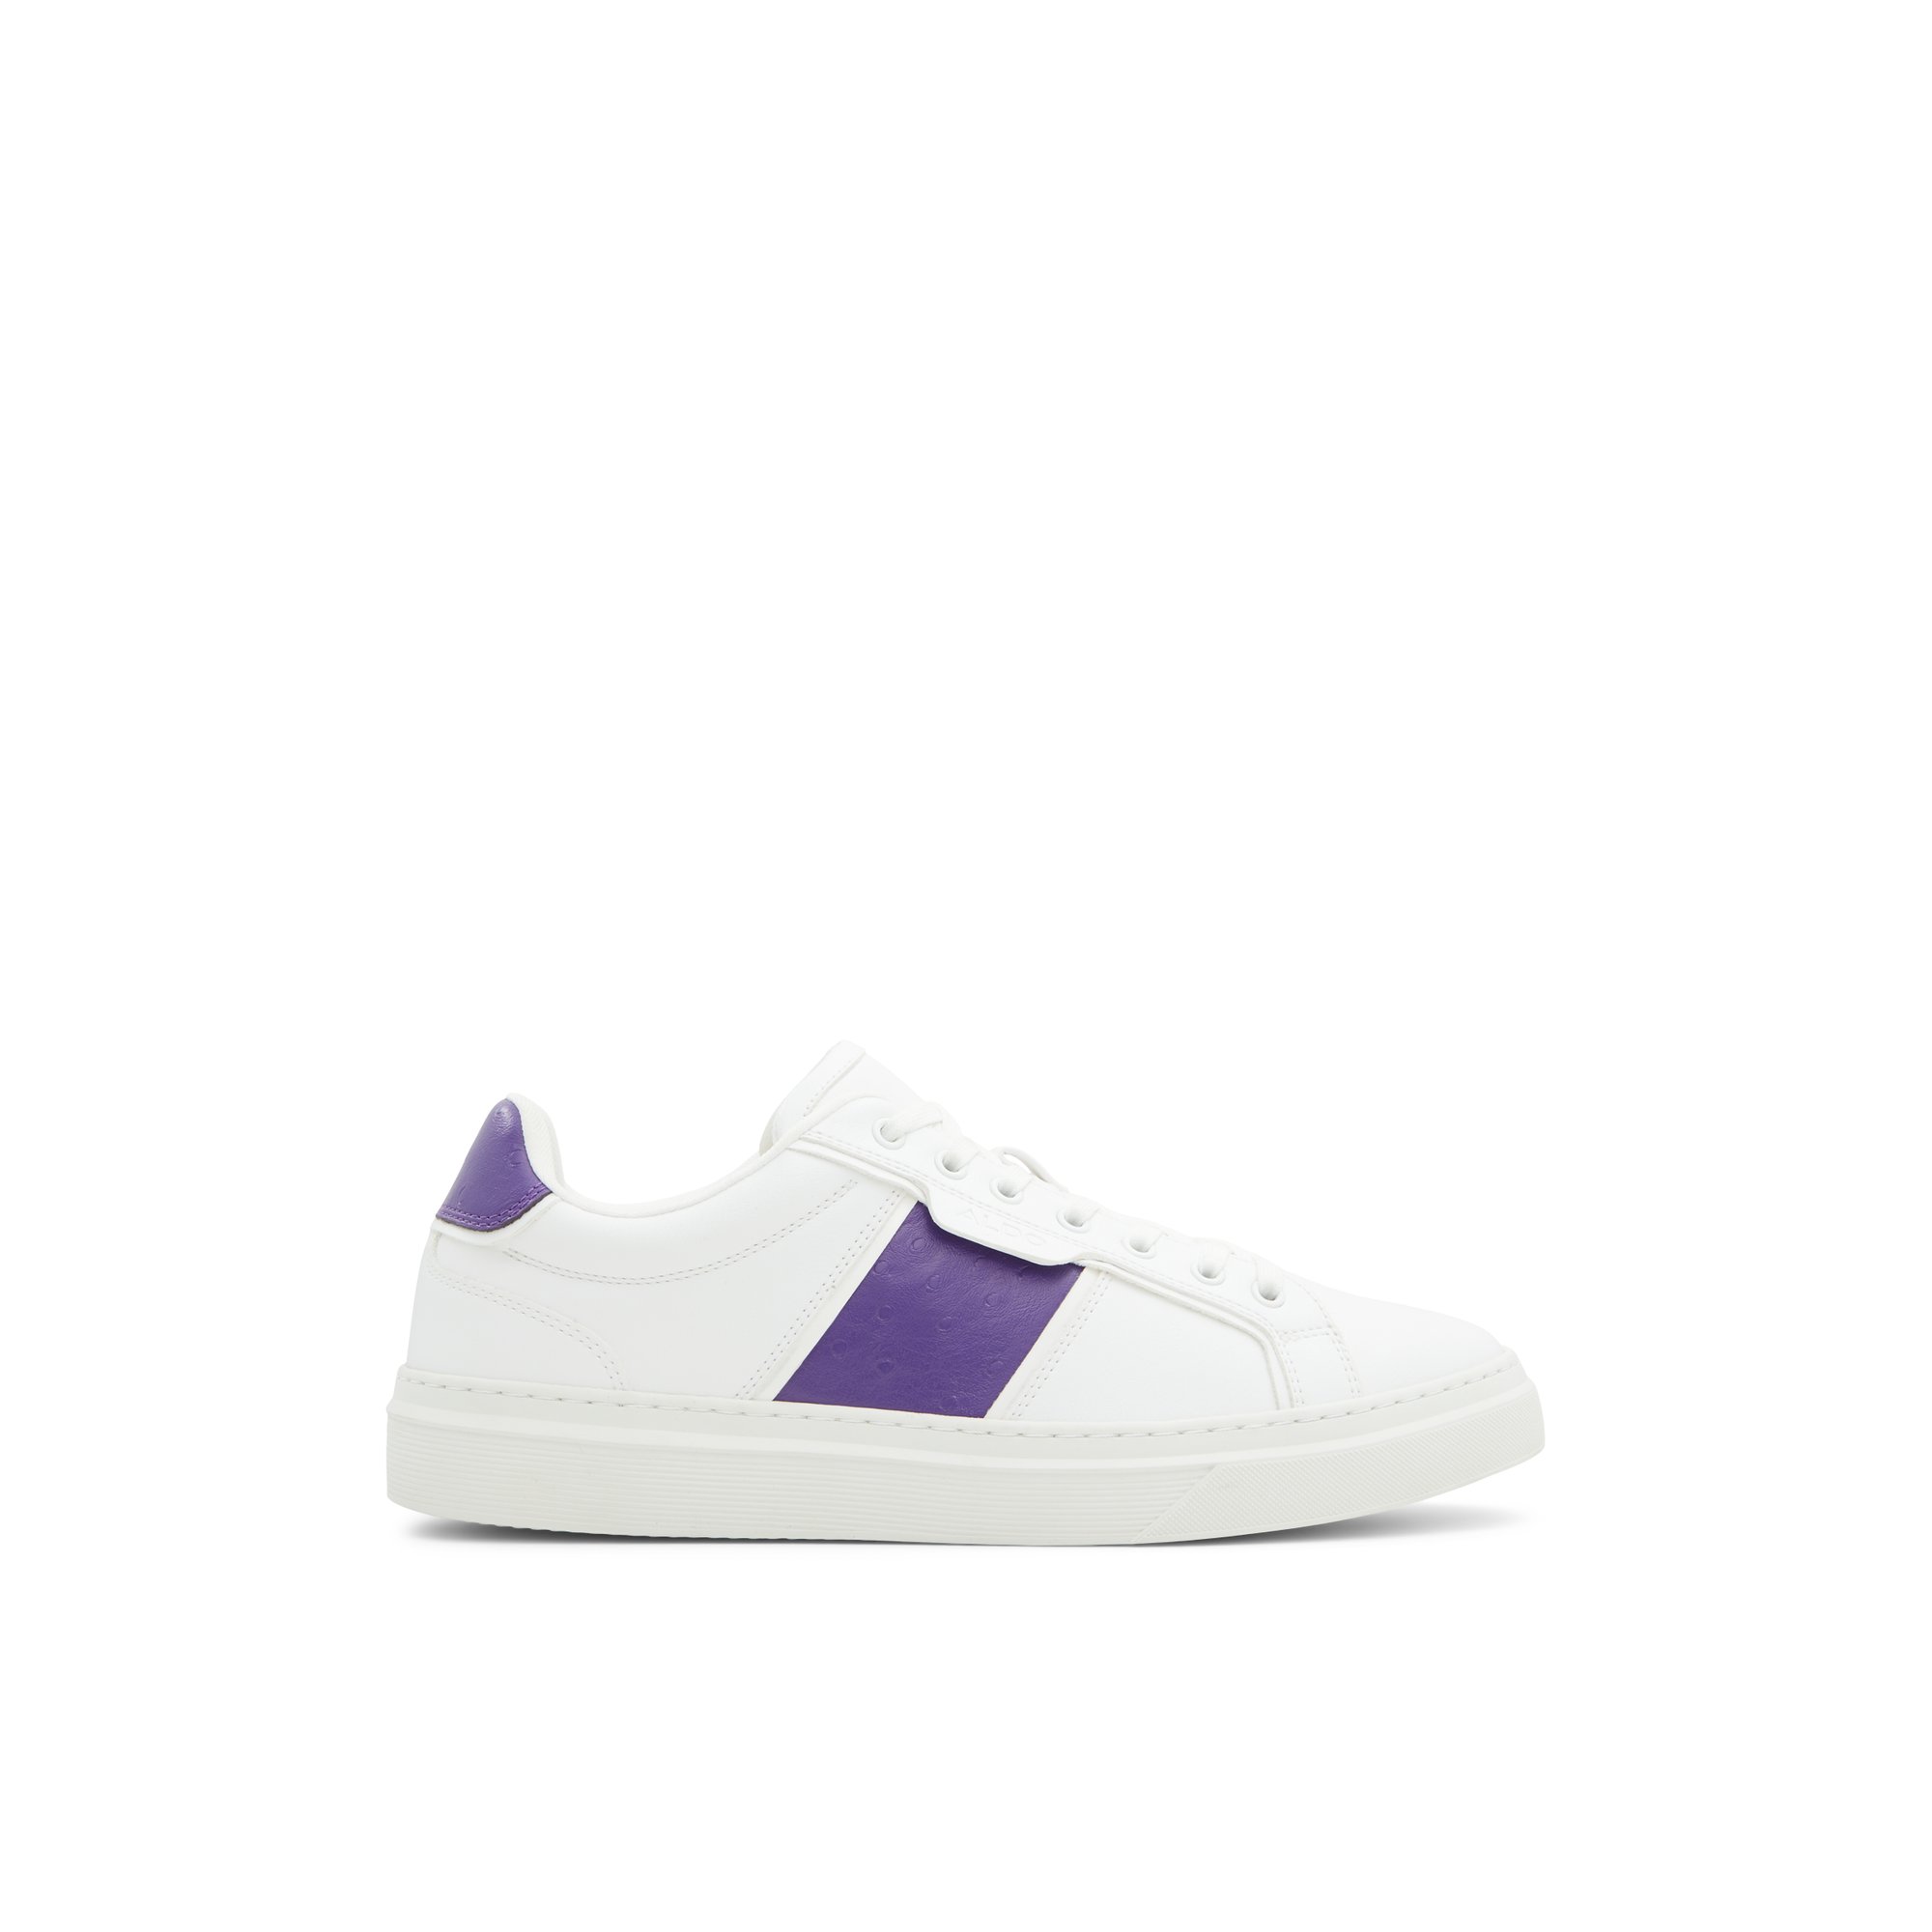 ALDO Courtline - Men's Sneakers Low Top - White